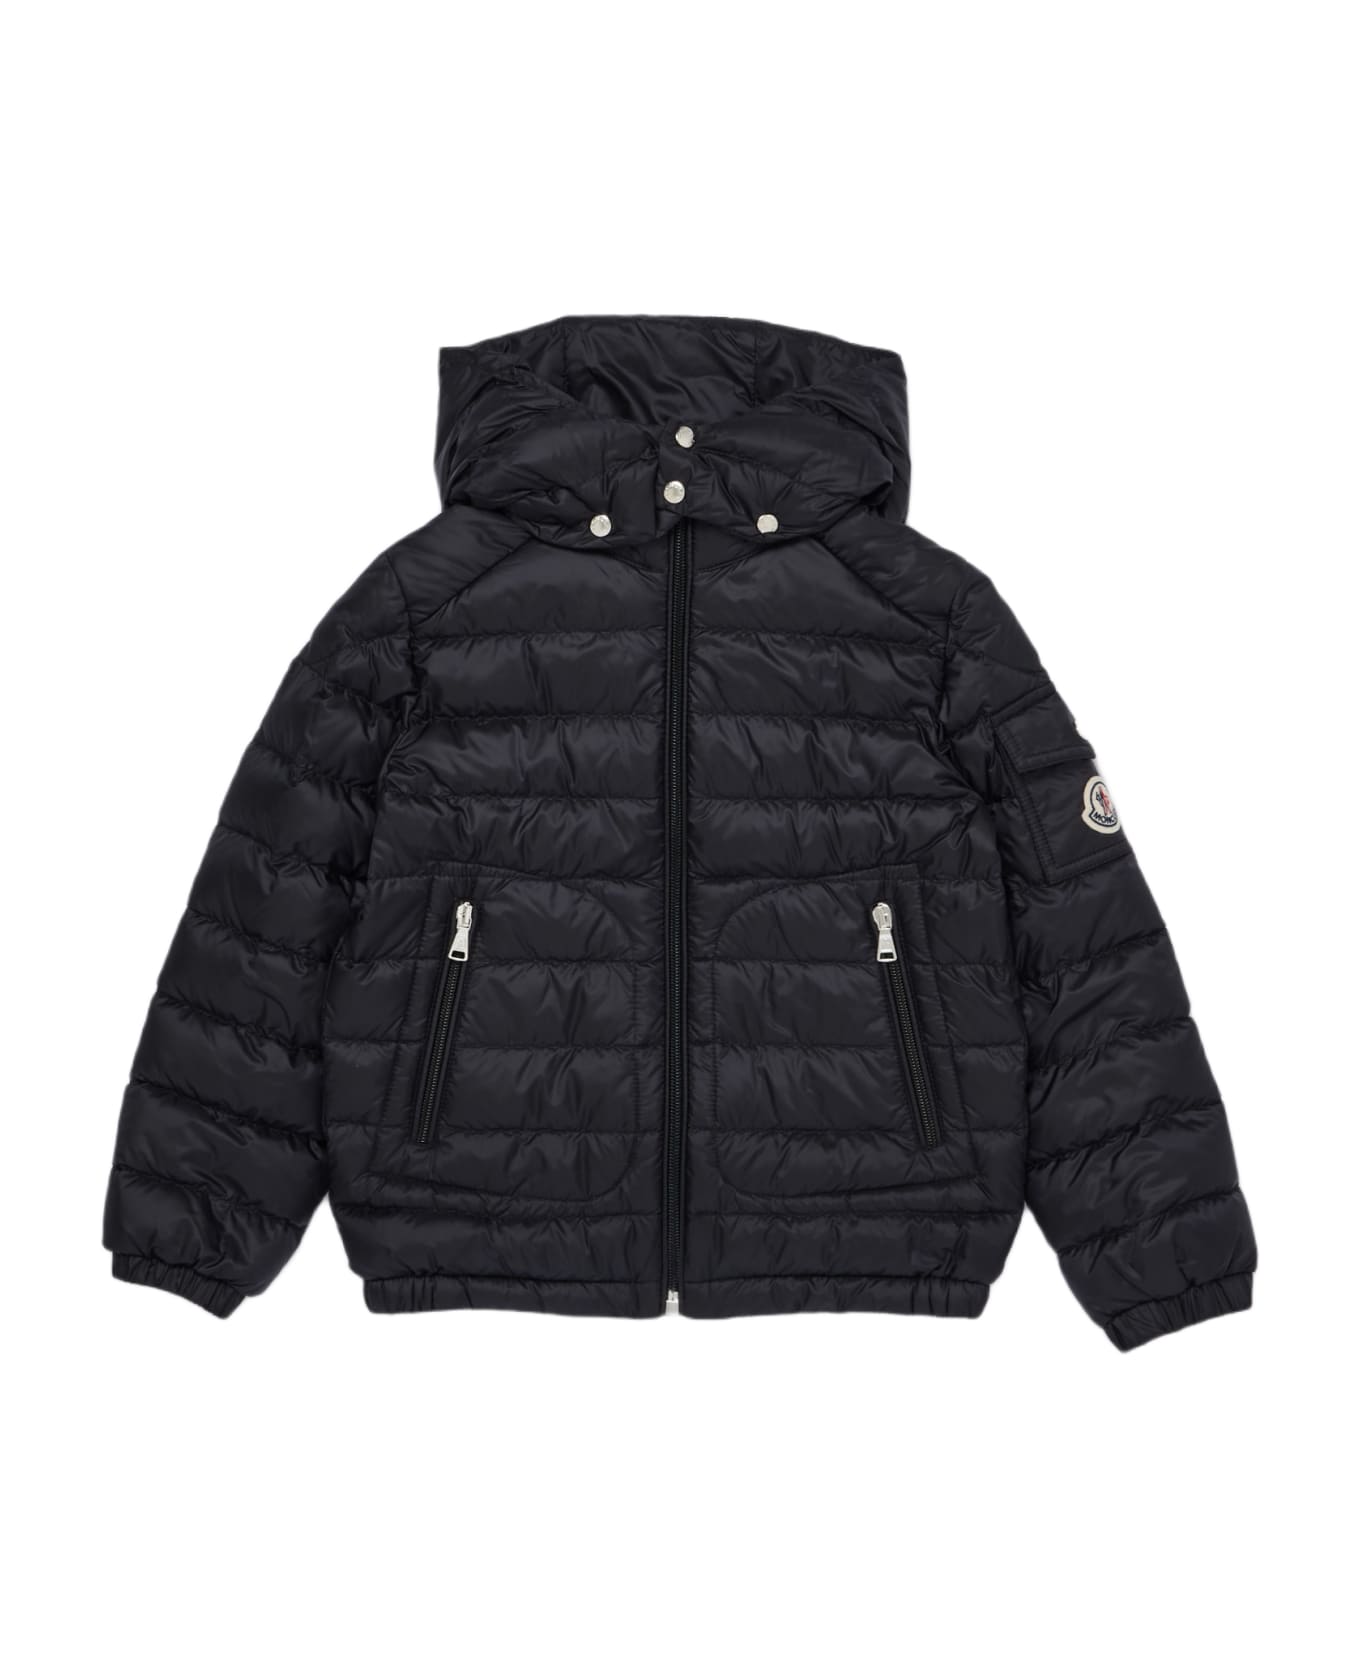 Moncler Lauros Jacket Jacket - NERO